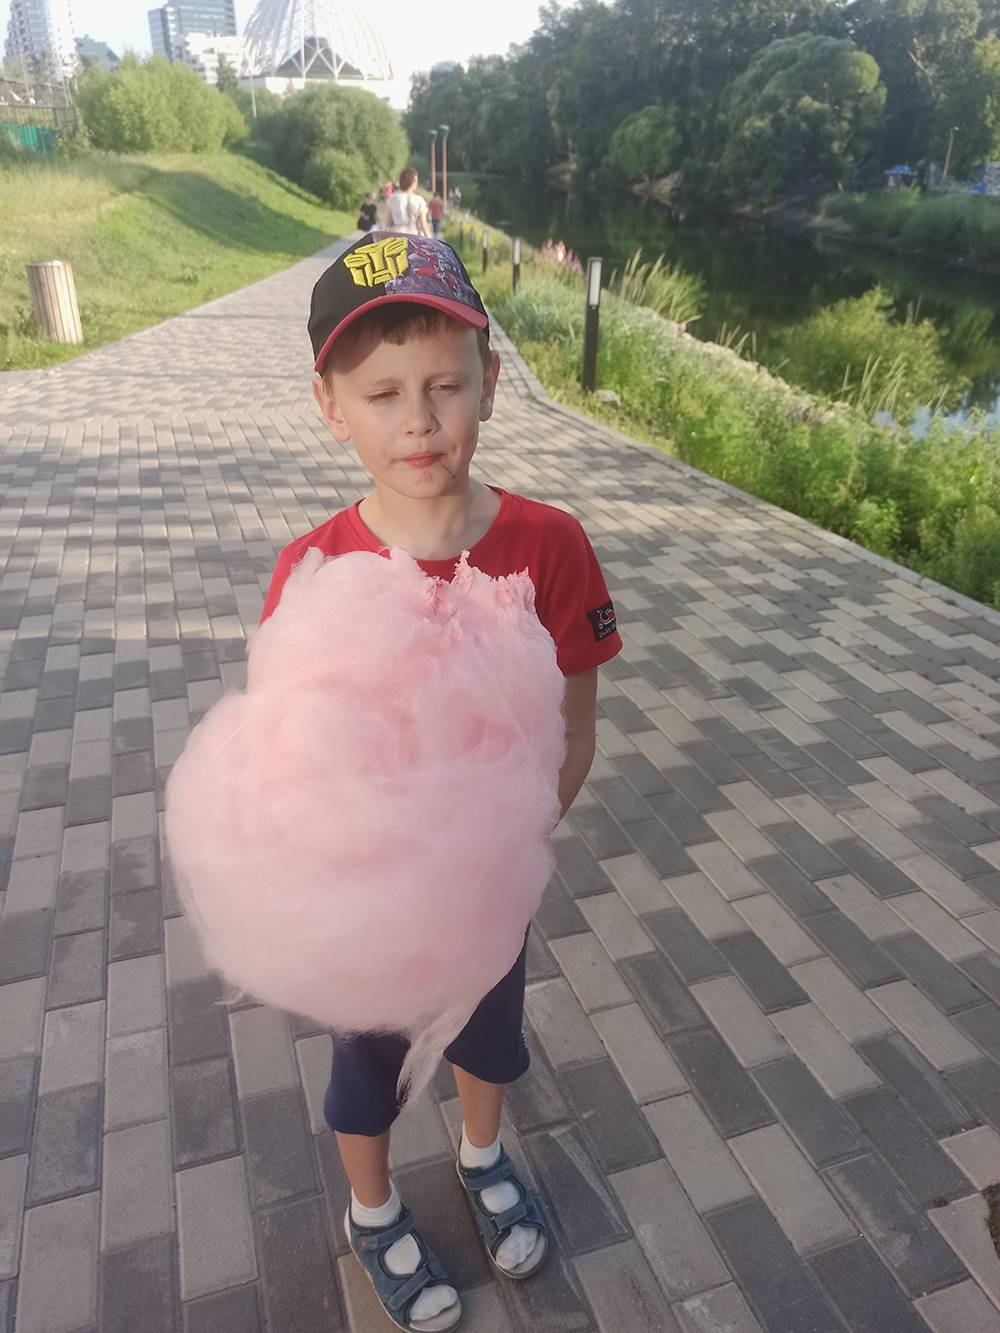 Гуляли по Екатеринбургу, и сын выпросил у меня сладкую вату